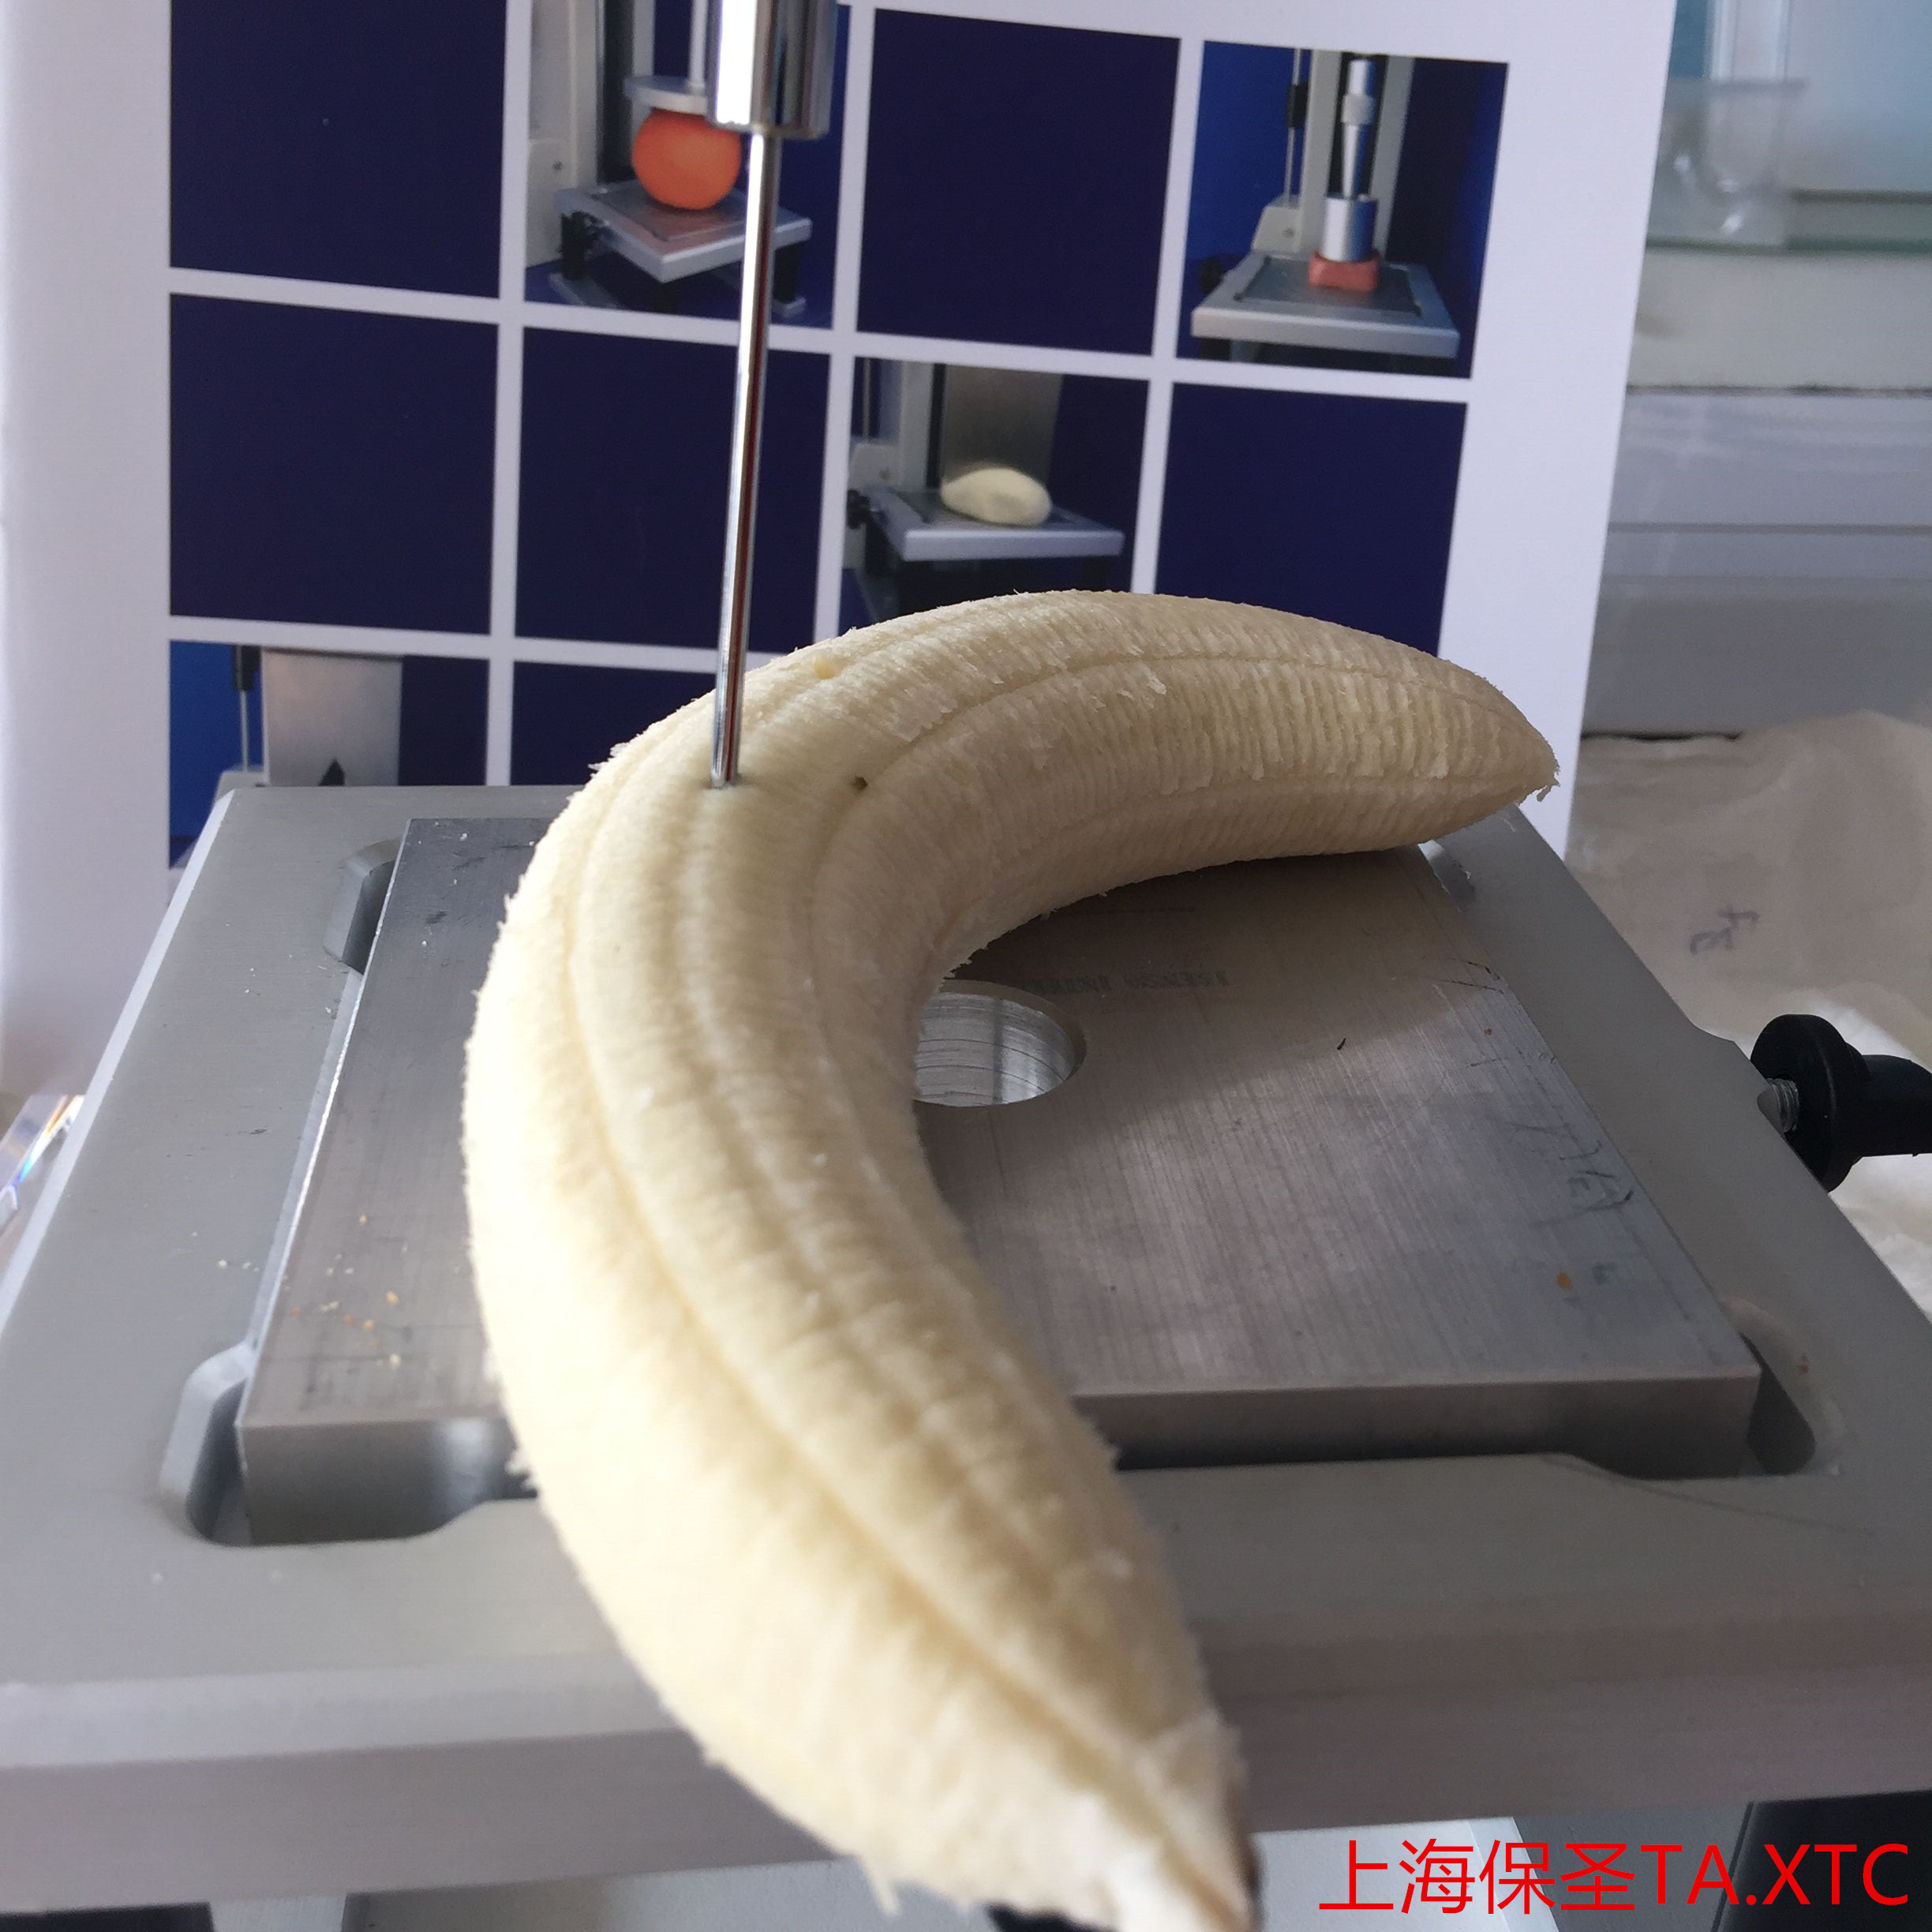 水果硬度测试仪-上海保圣TA.Touch